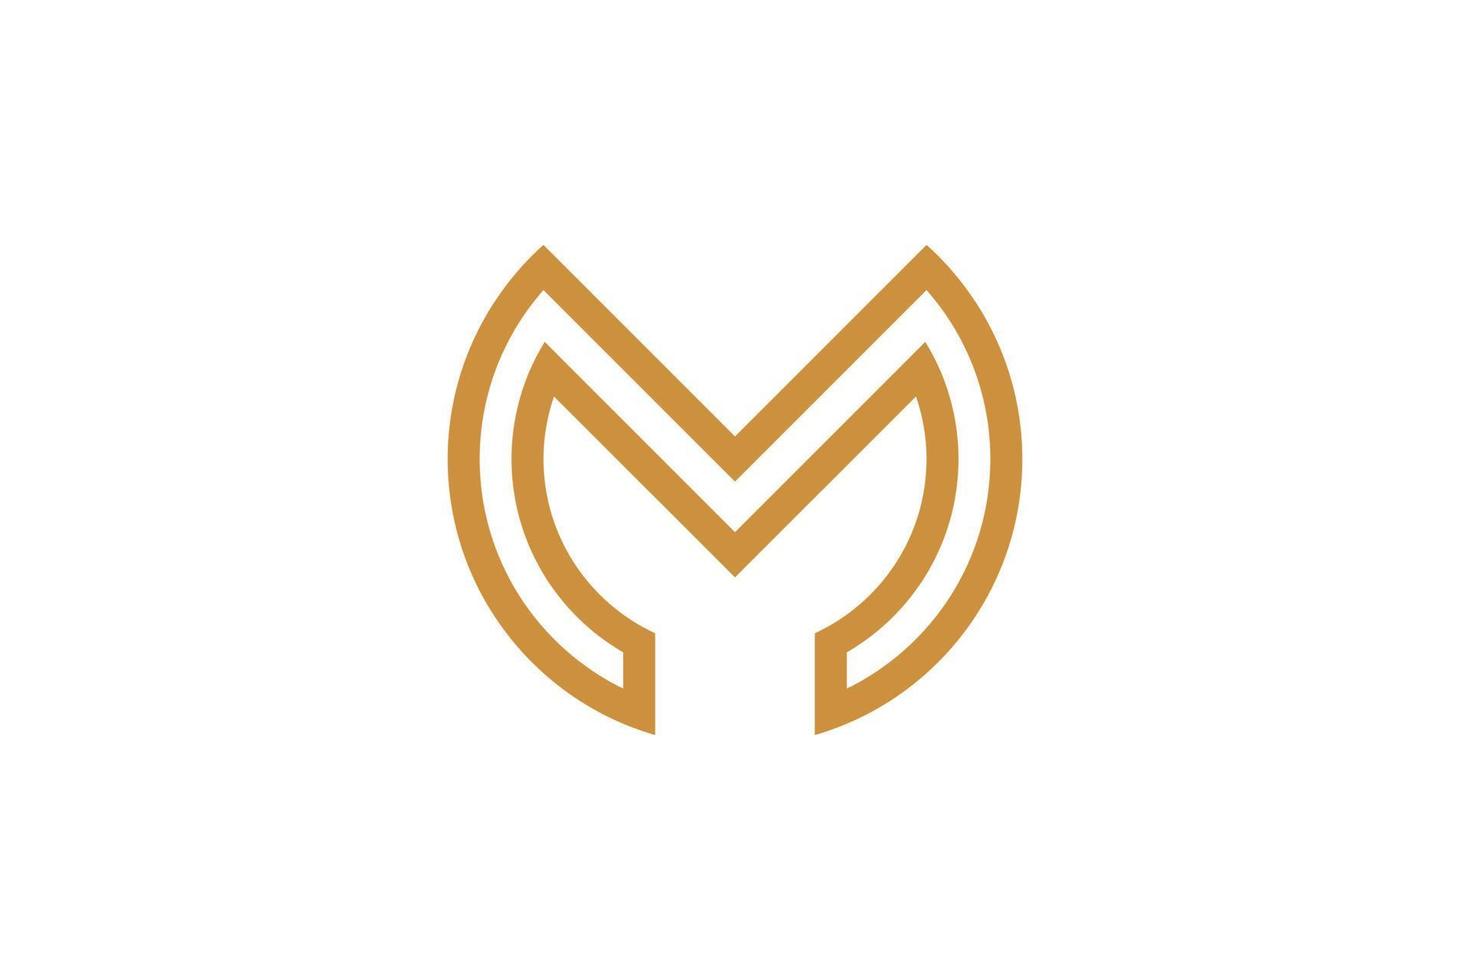 astratto iniziale lettera m monoline logo vettore